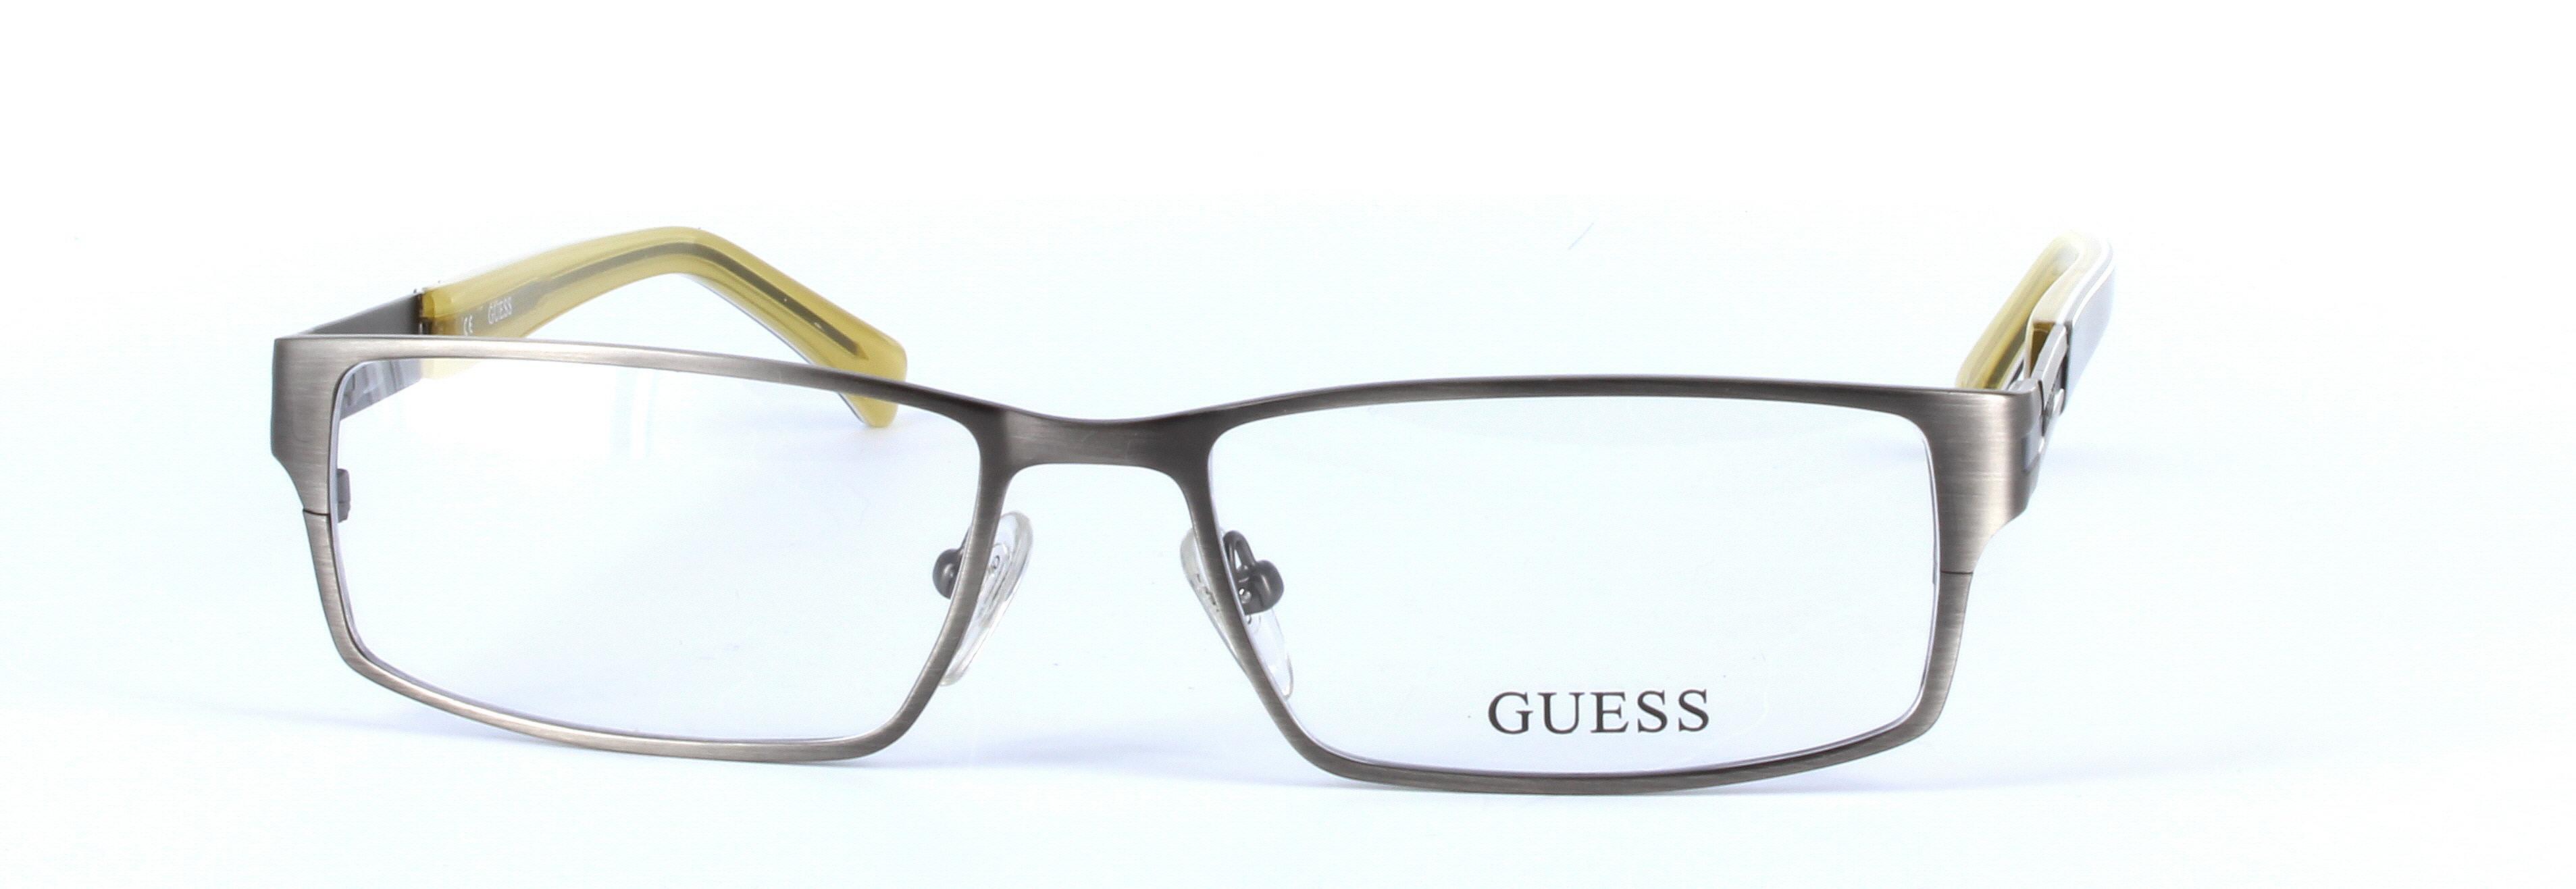 GUESS (GU1787-GUN) Gunmetal Full Rim Rectangular Metal Glasses - Image View 5